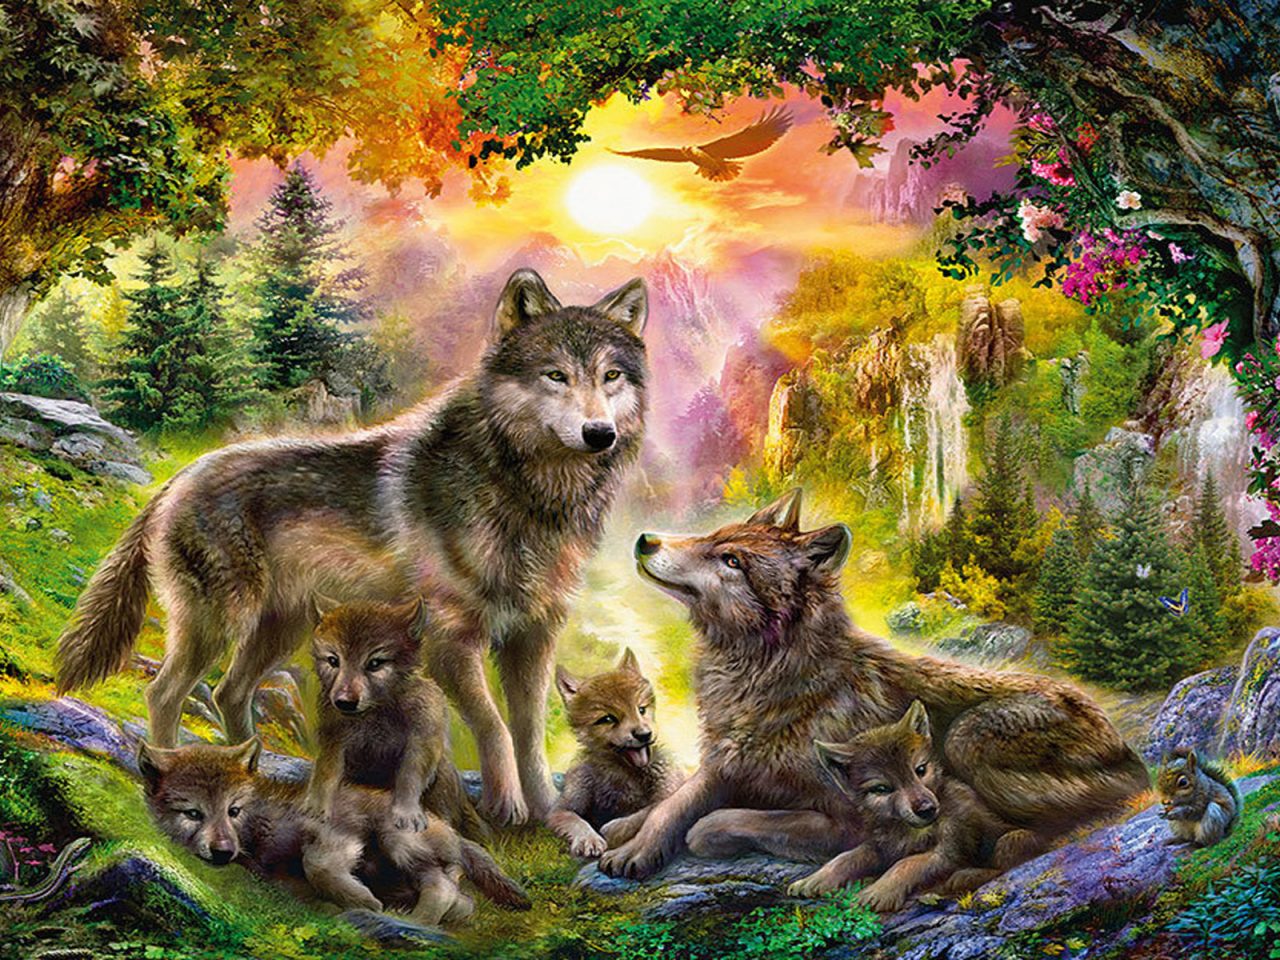 オオカミの芸術の壁紙,自然,野生動物,狼,カニスループスツンドララム,レッドウルフ